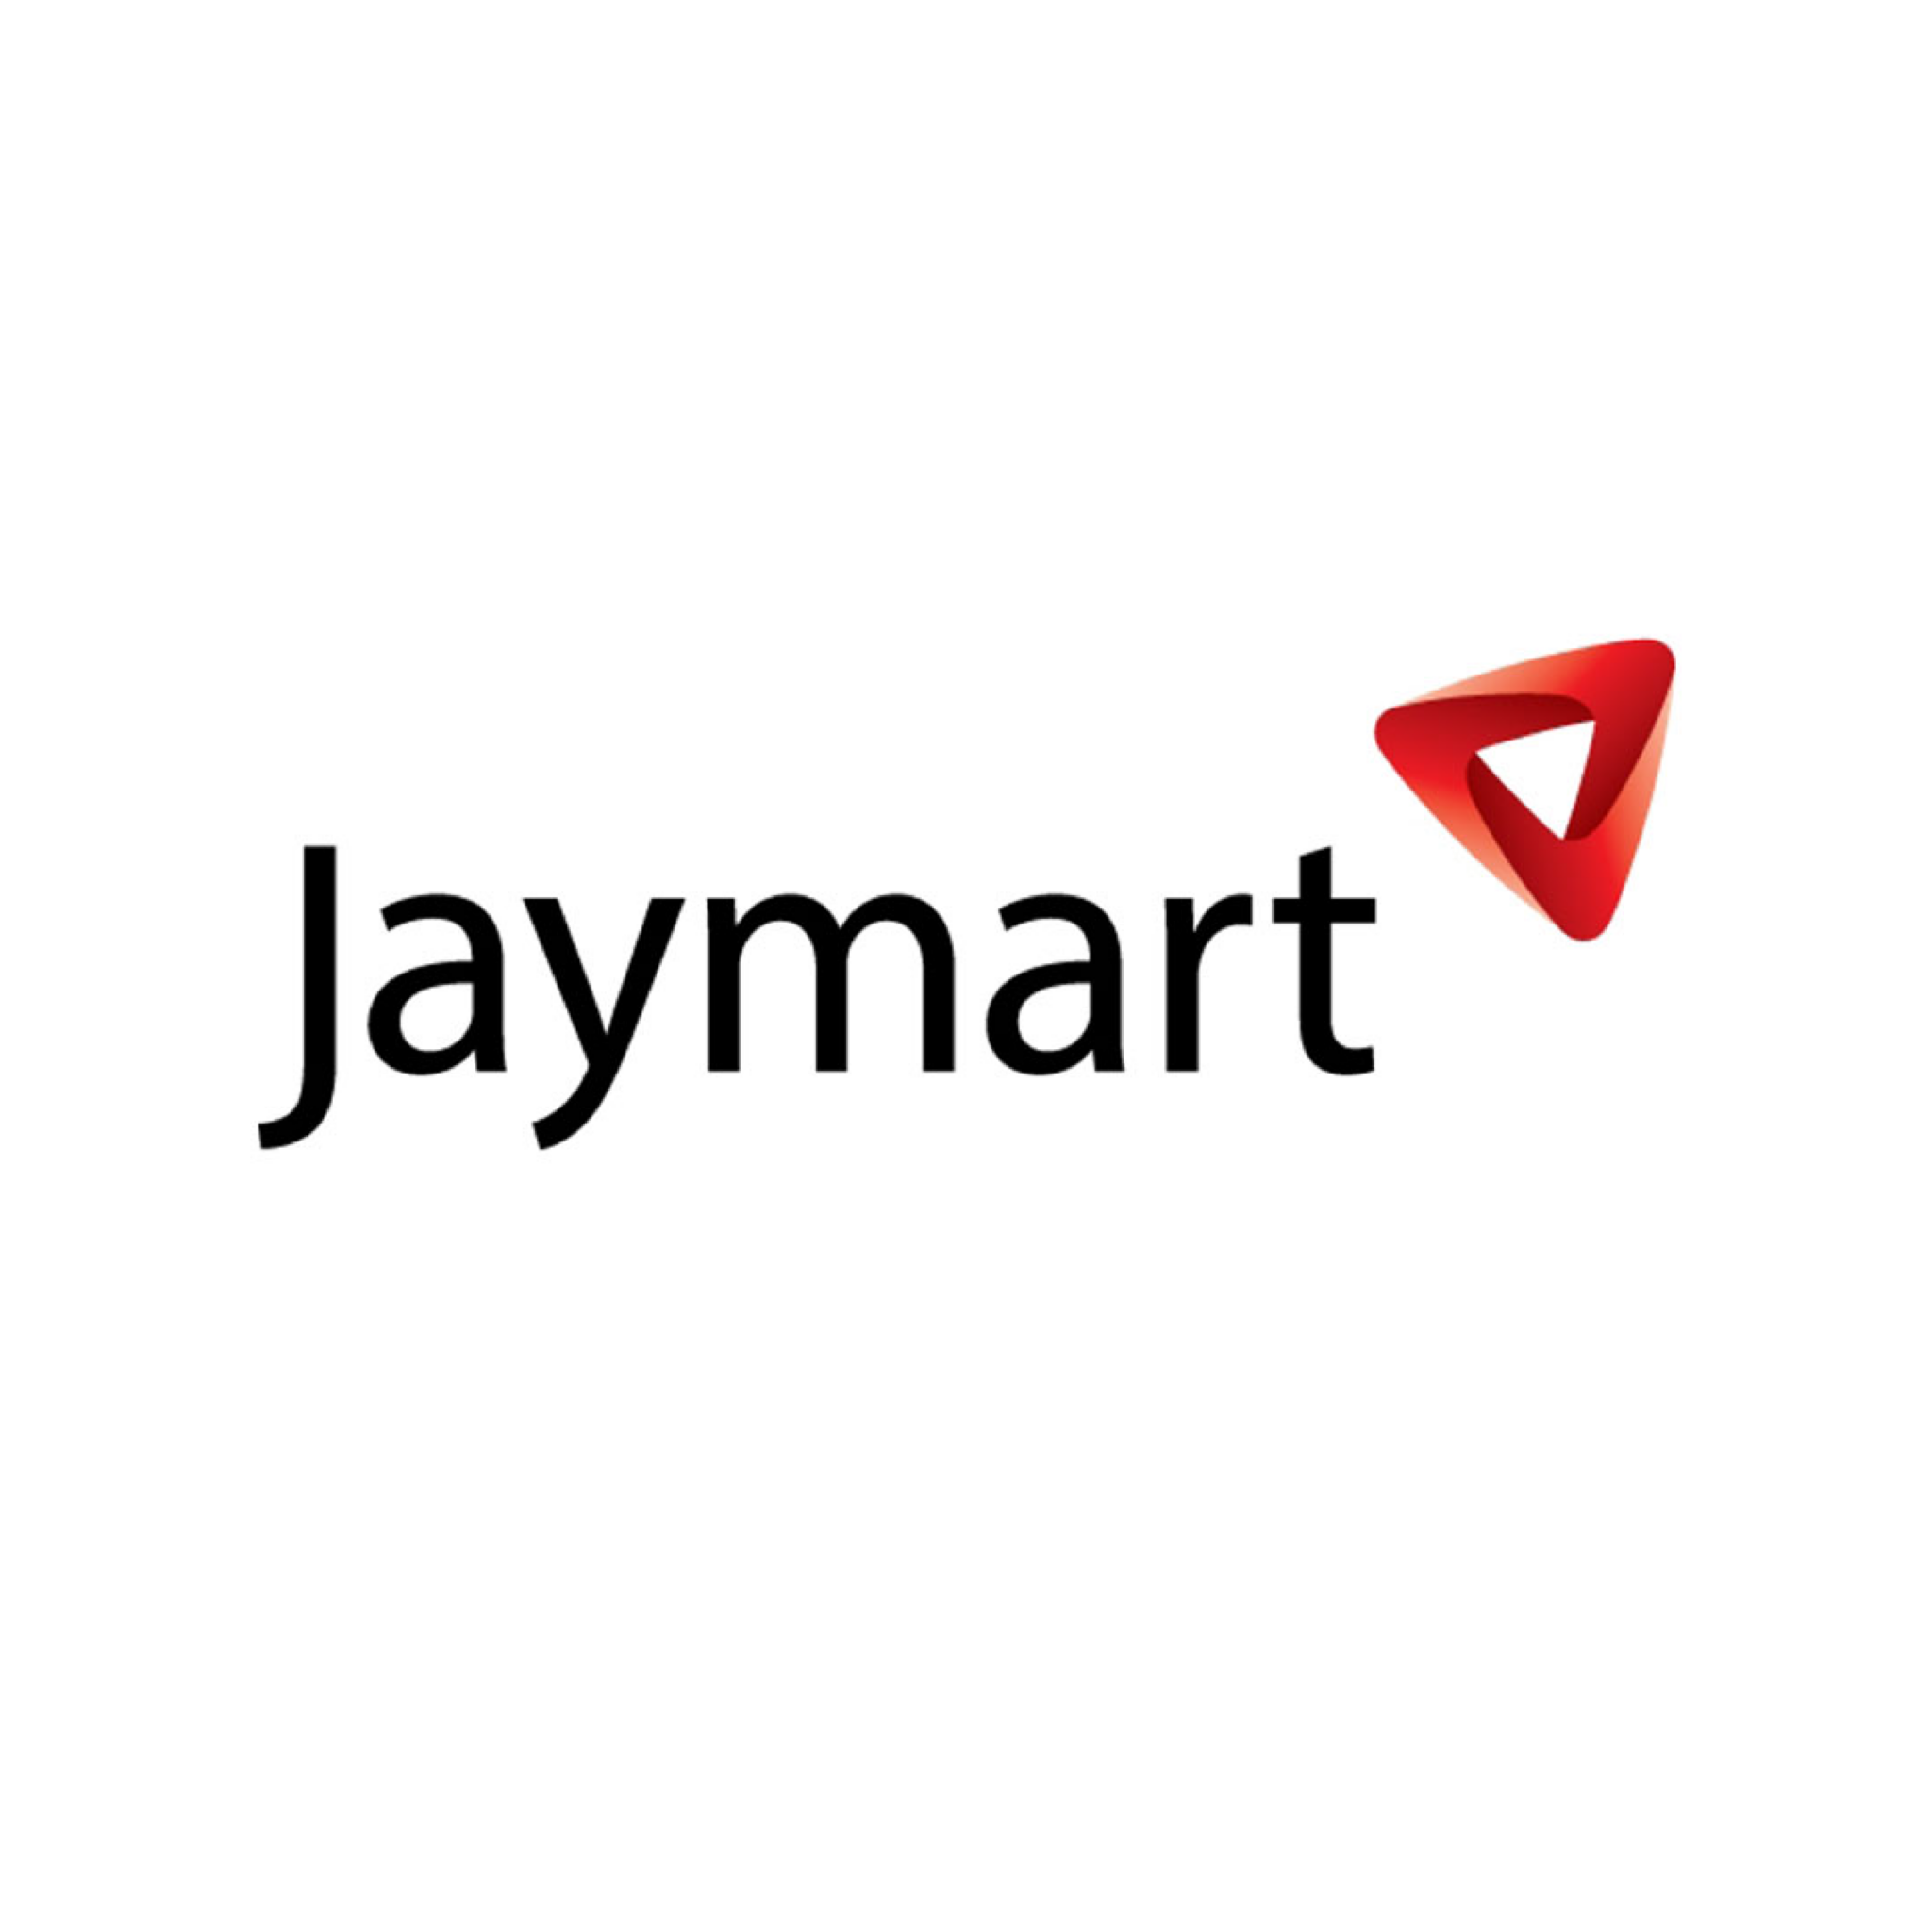 Jaymart-01